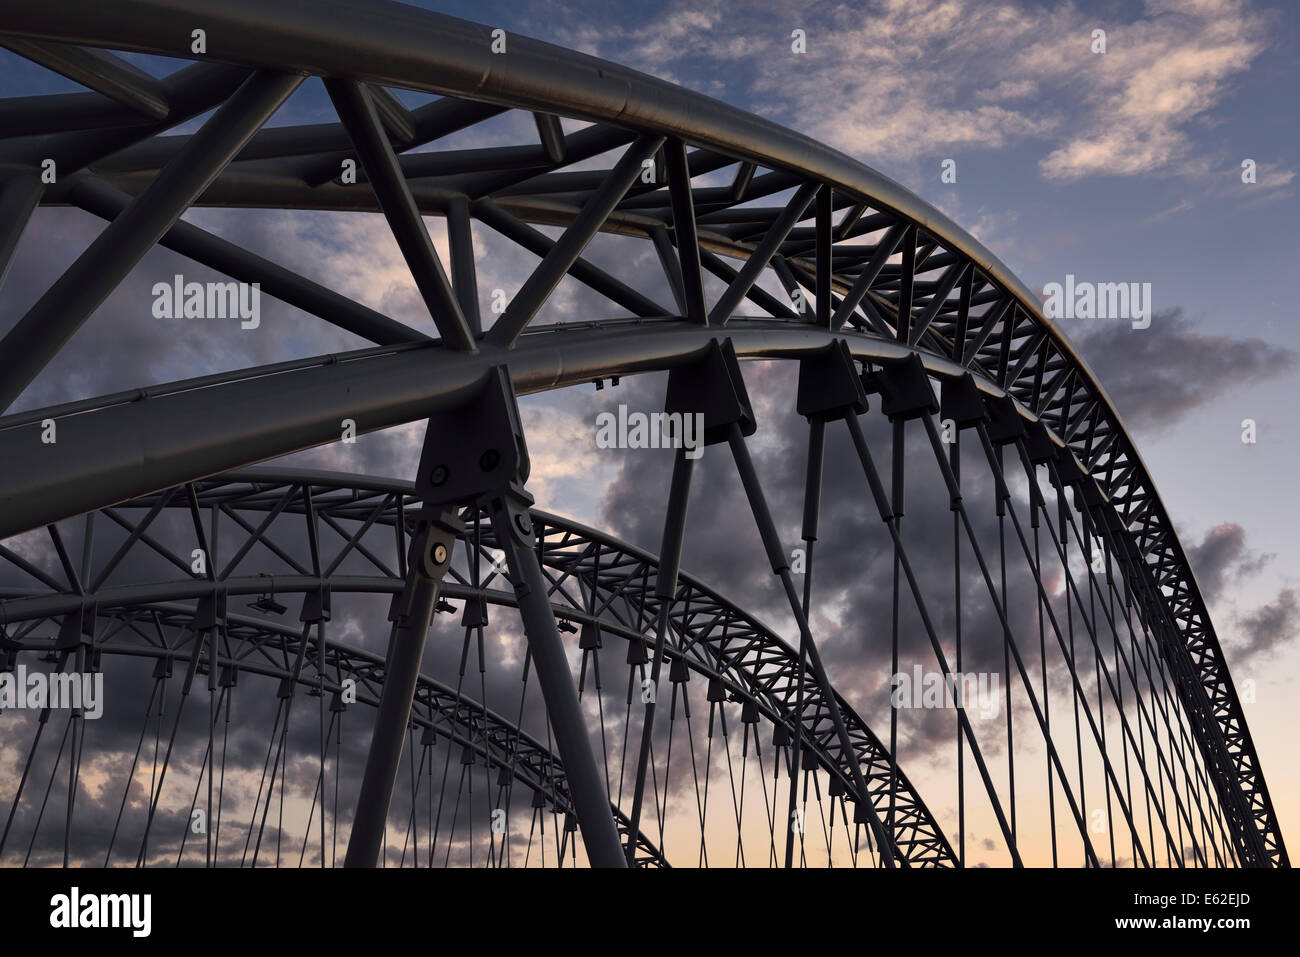 Arcuata di travi di acciaio al tramonto del nuovo strandherd armstrong ponte sopra il fiume rideau ottawa Foto Stock